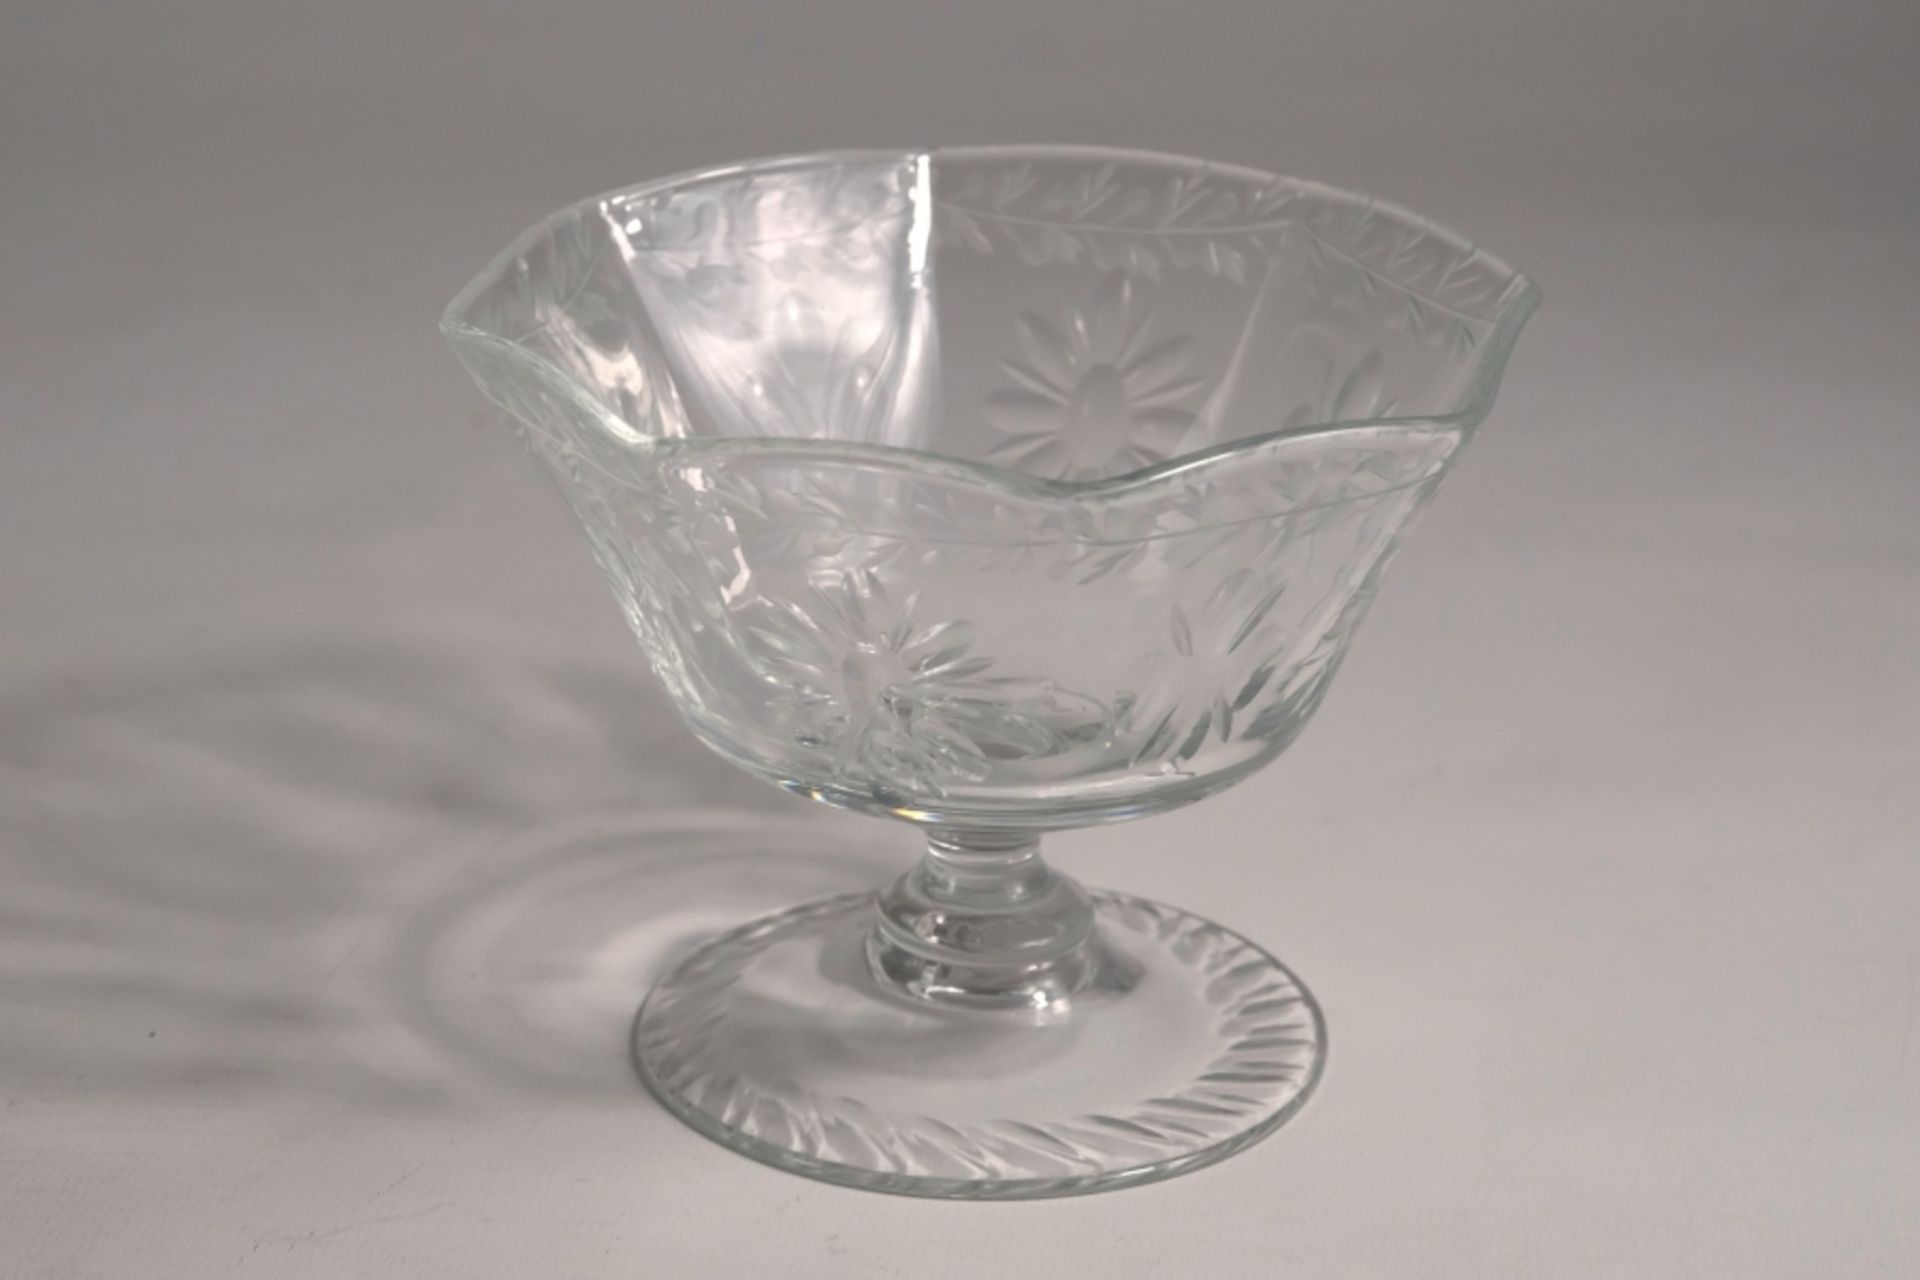 An antique sweet or dessert bowl. Colourless glass, cut. 